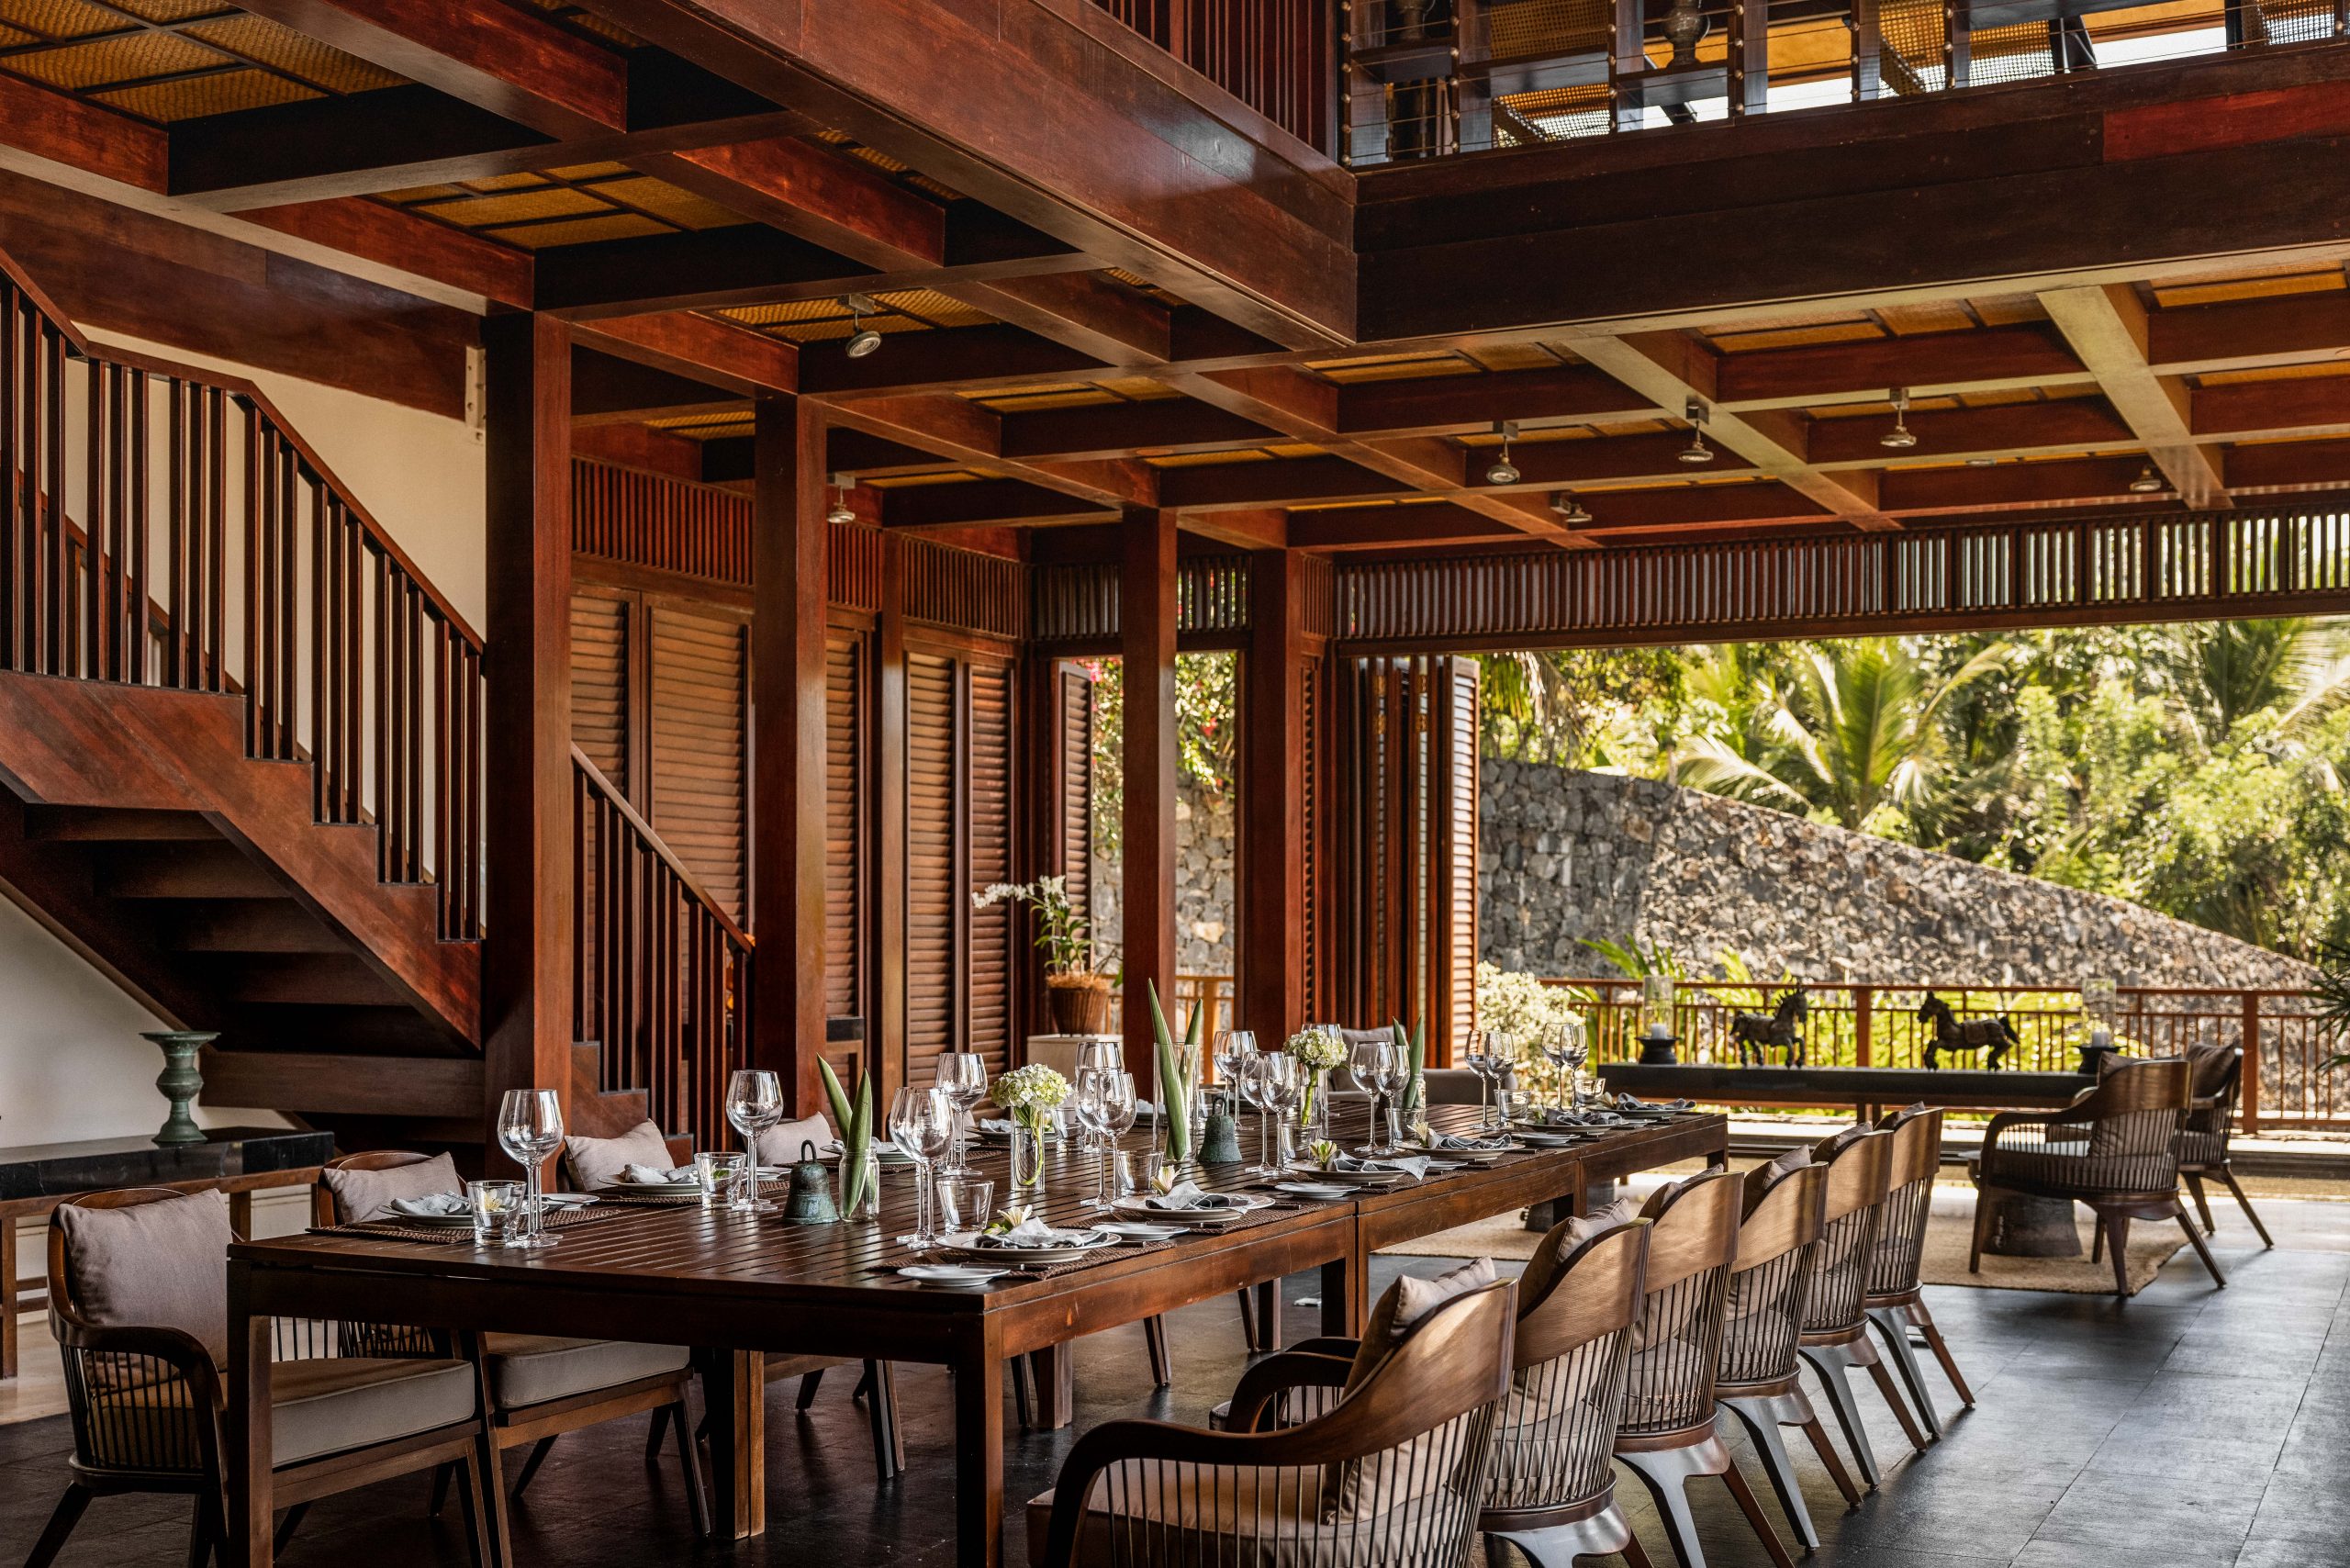 ANI Sri Lanka - Resort - Villa Divia Dining